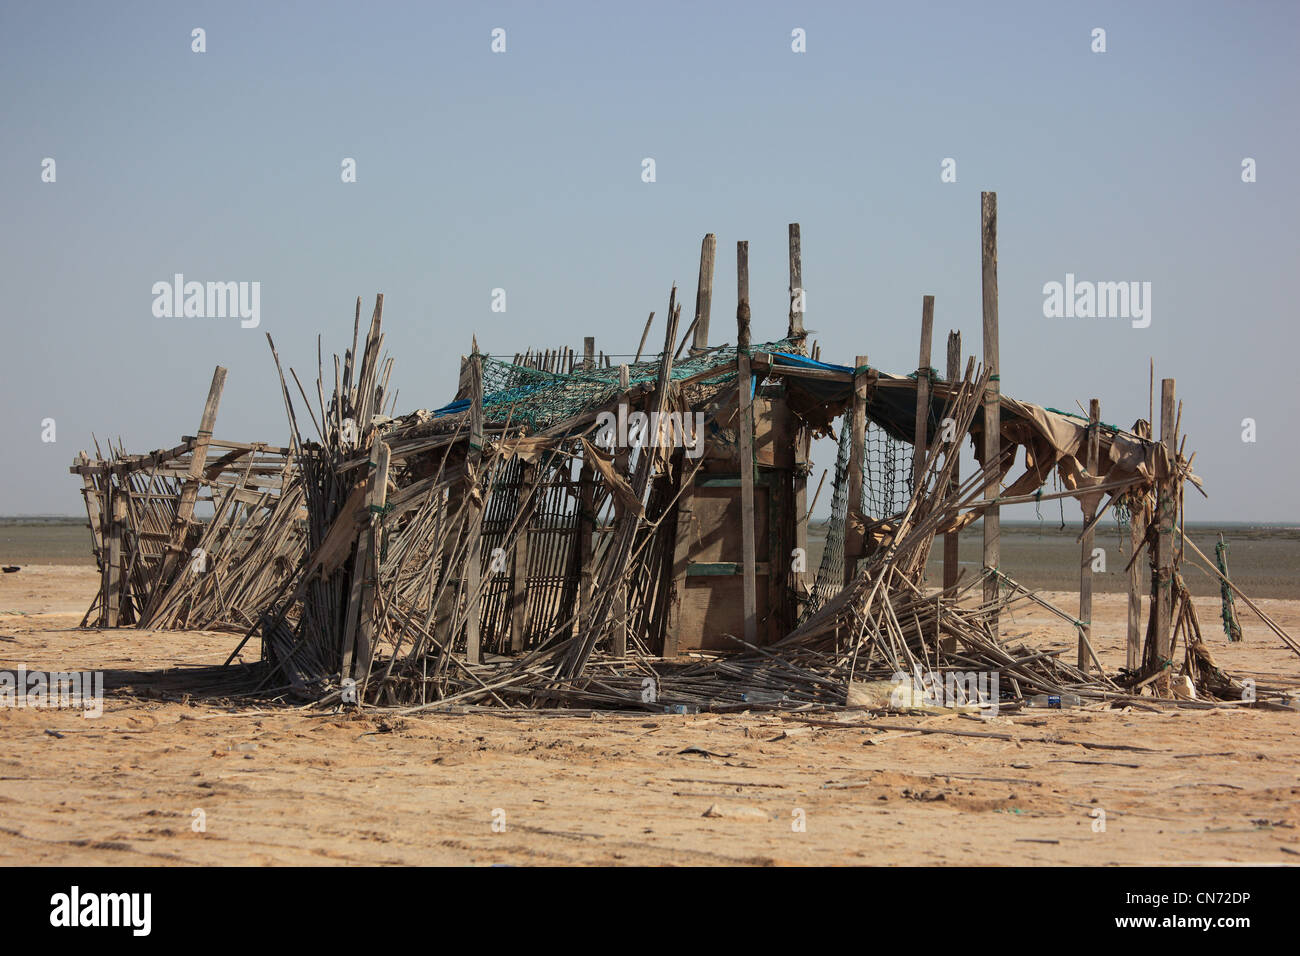 Armselige Fischersiedlungen an der Ostküste des Oman bei film Foto Stock